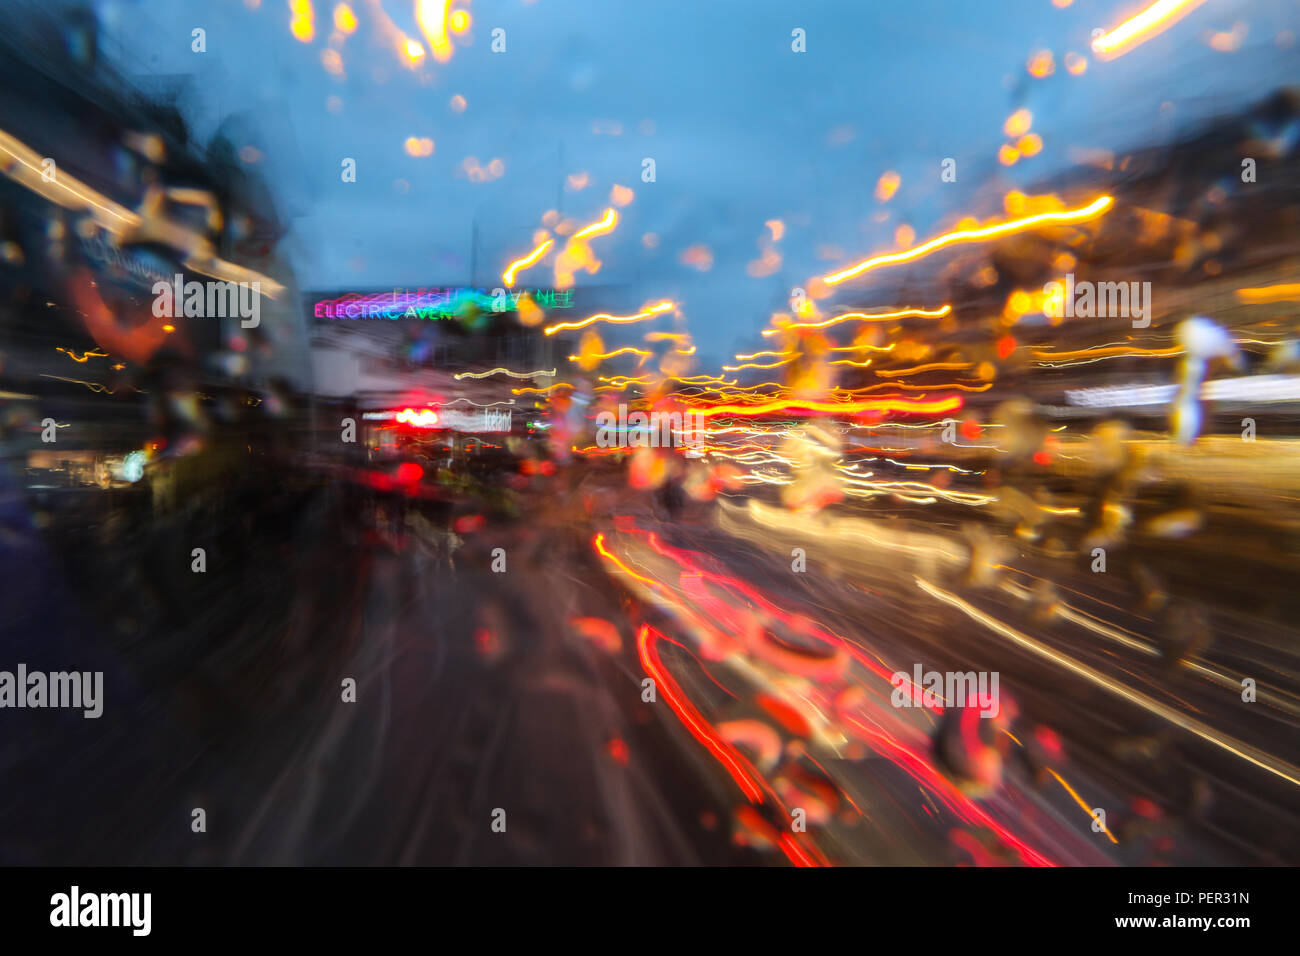 Una imagen desde el bus de conducción en la ciudad durante la noche de la lluvia. Todo es abstracto borrosa en trazas de colores. Foto de stock